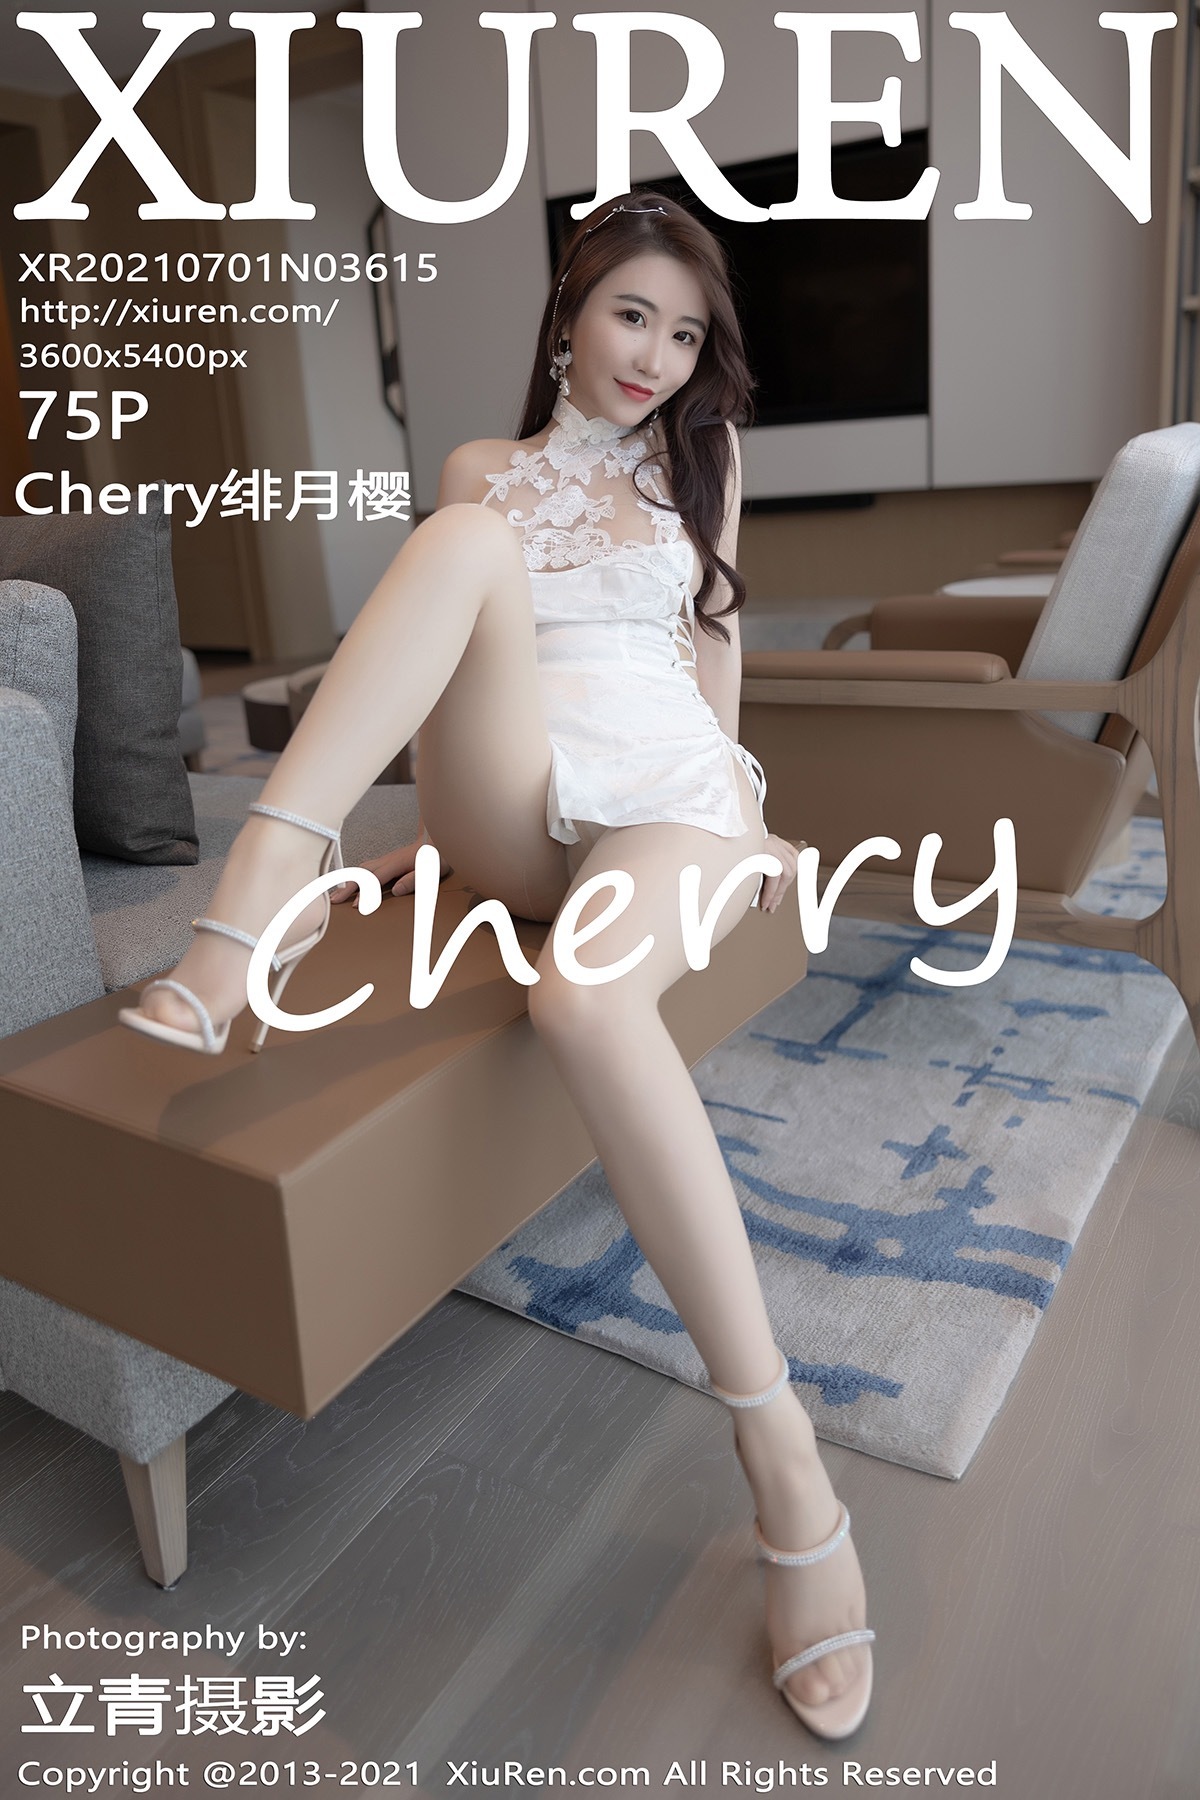 XIUREN XIUREN 2021.07.01 No.3615 Cherry moon Cherry